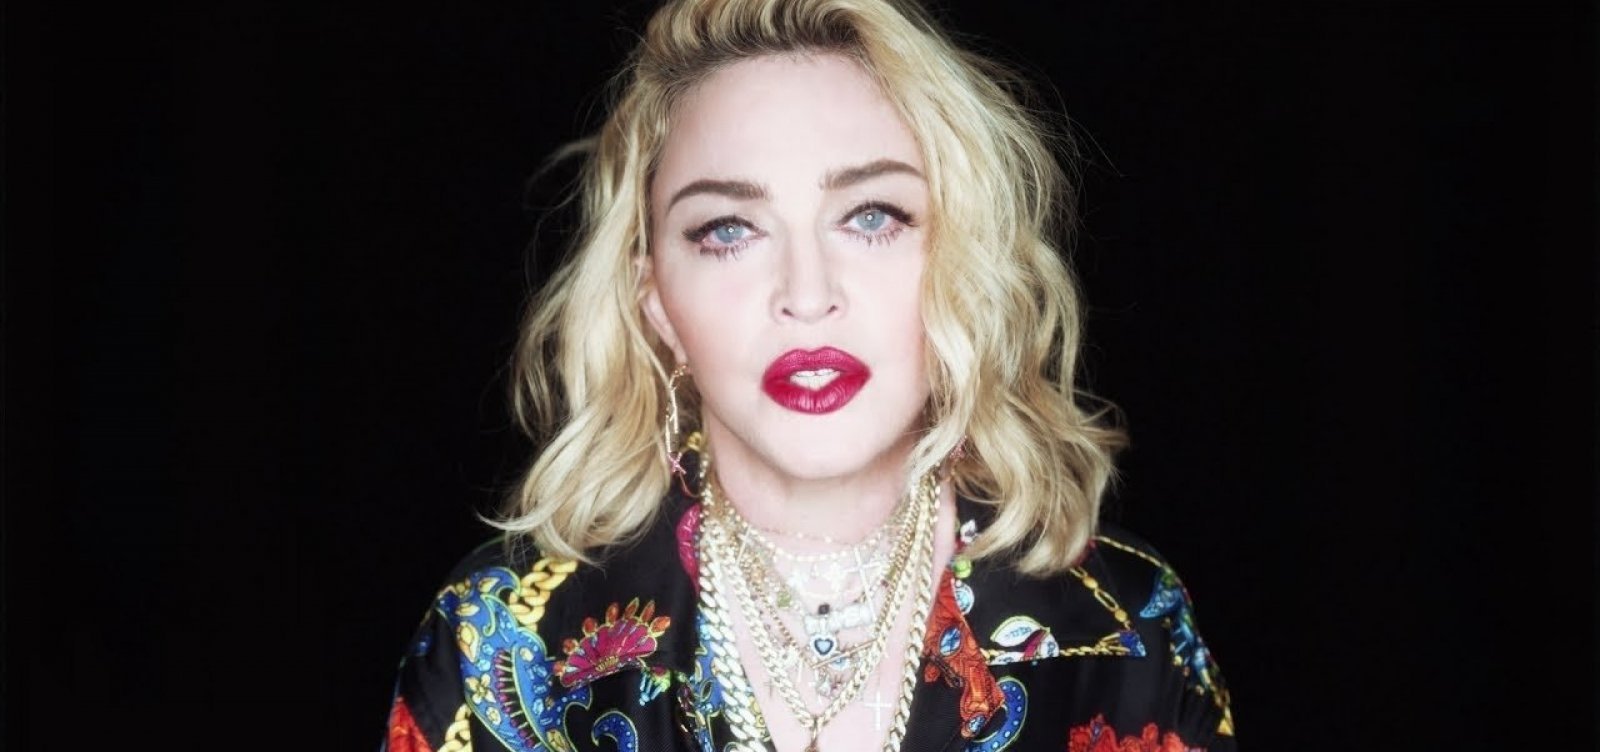 Notícia do show de Madonna de graça em Copacabana gera alegria e muitos memes